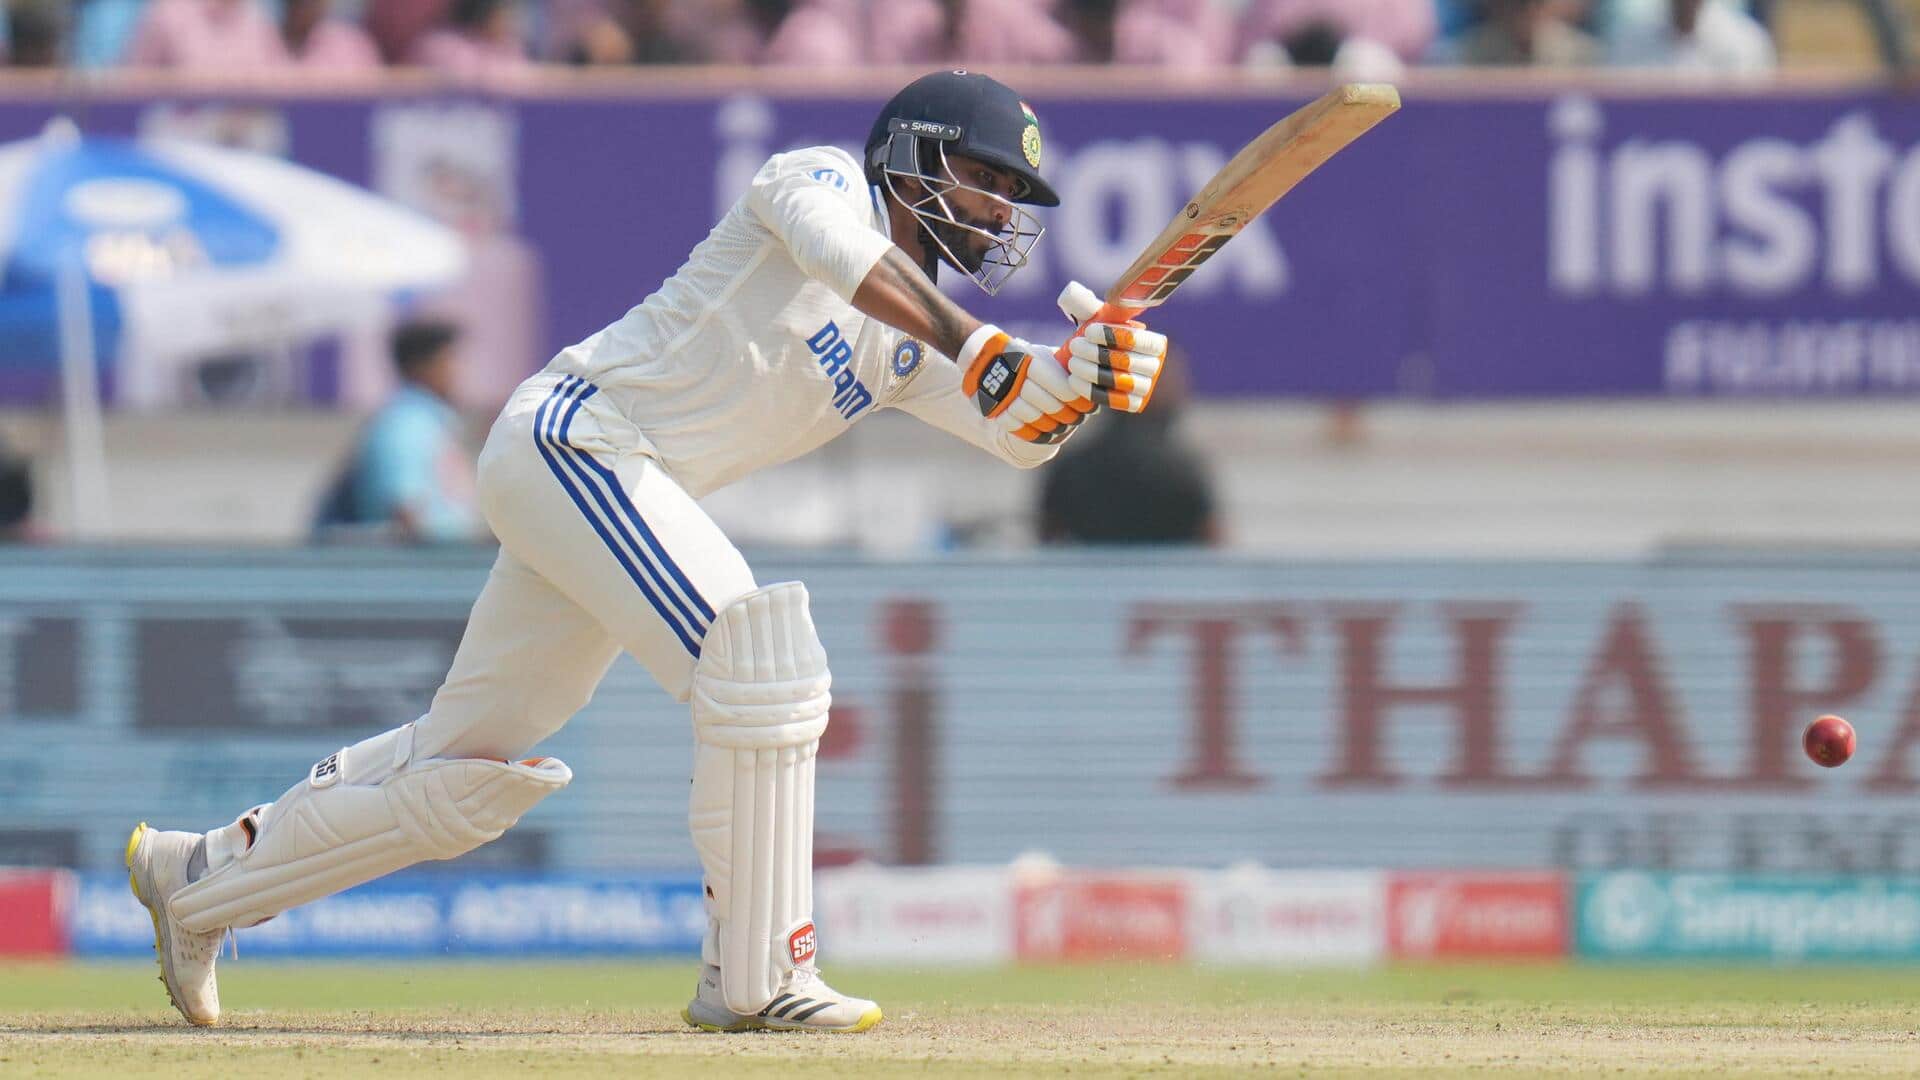 Ravindra Jadeja completes 1,000 Test runs versus England: Key stats